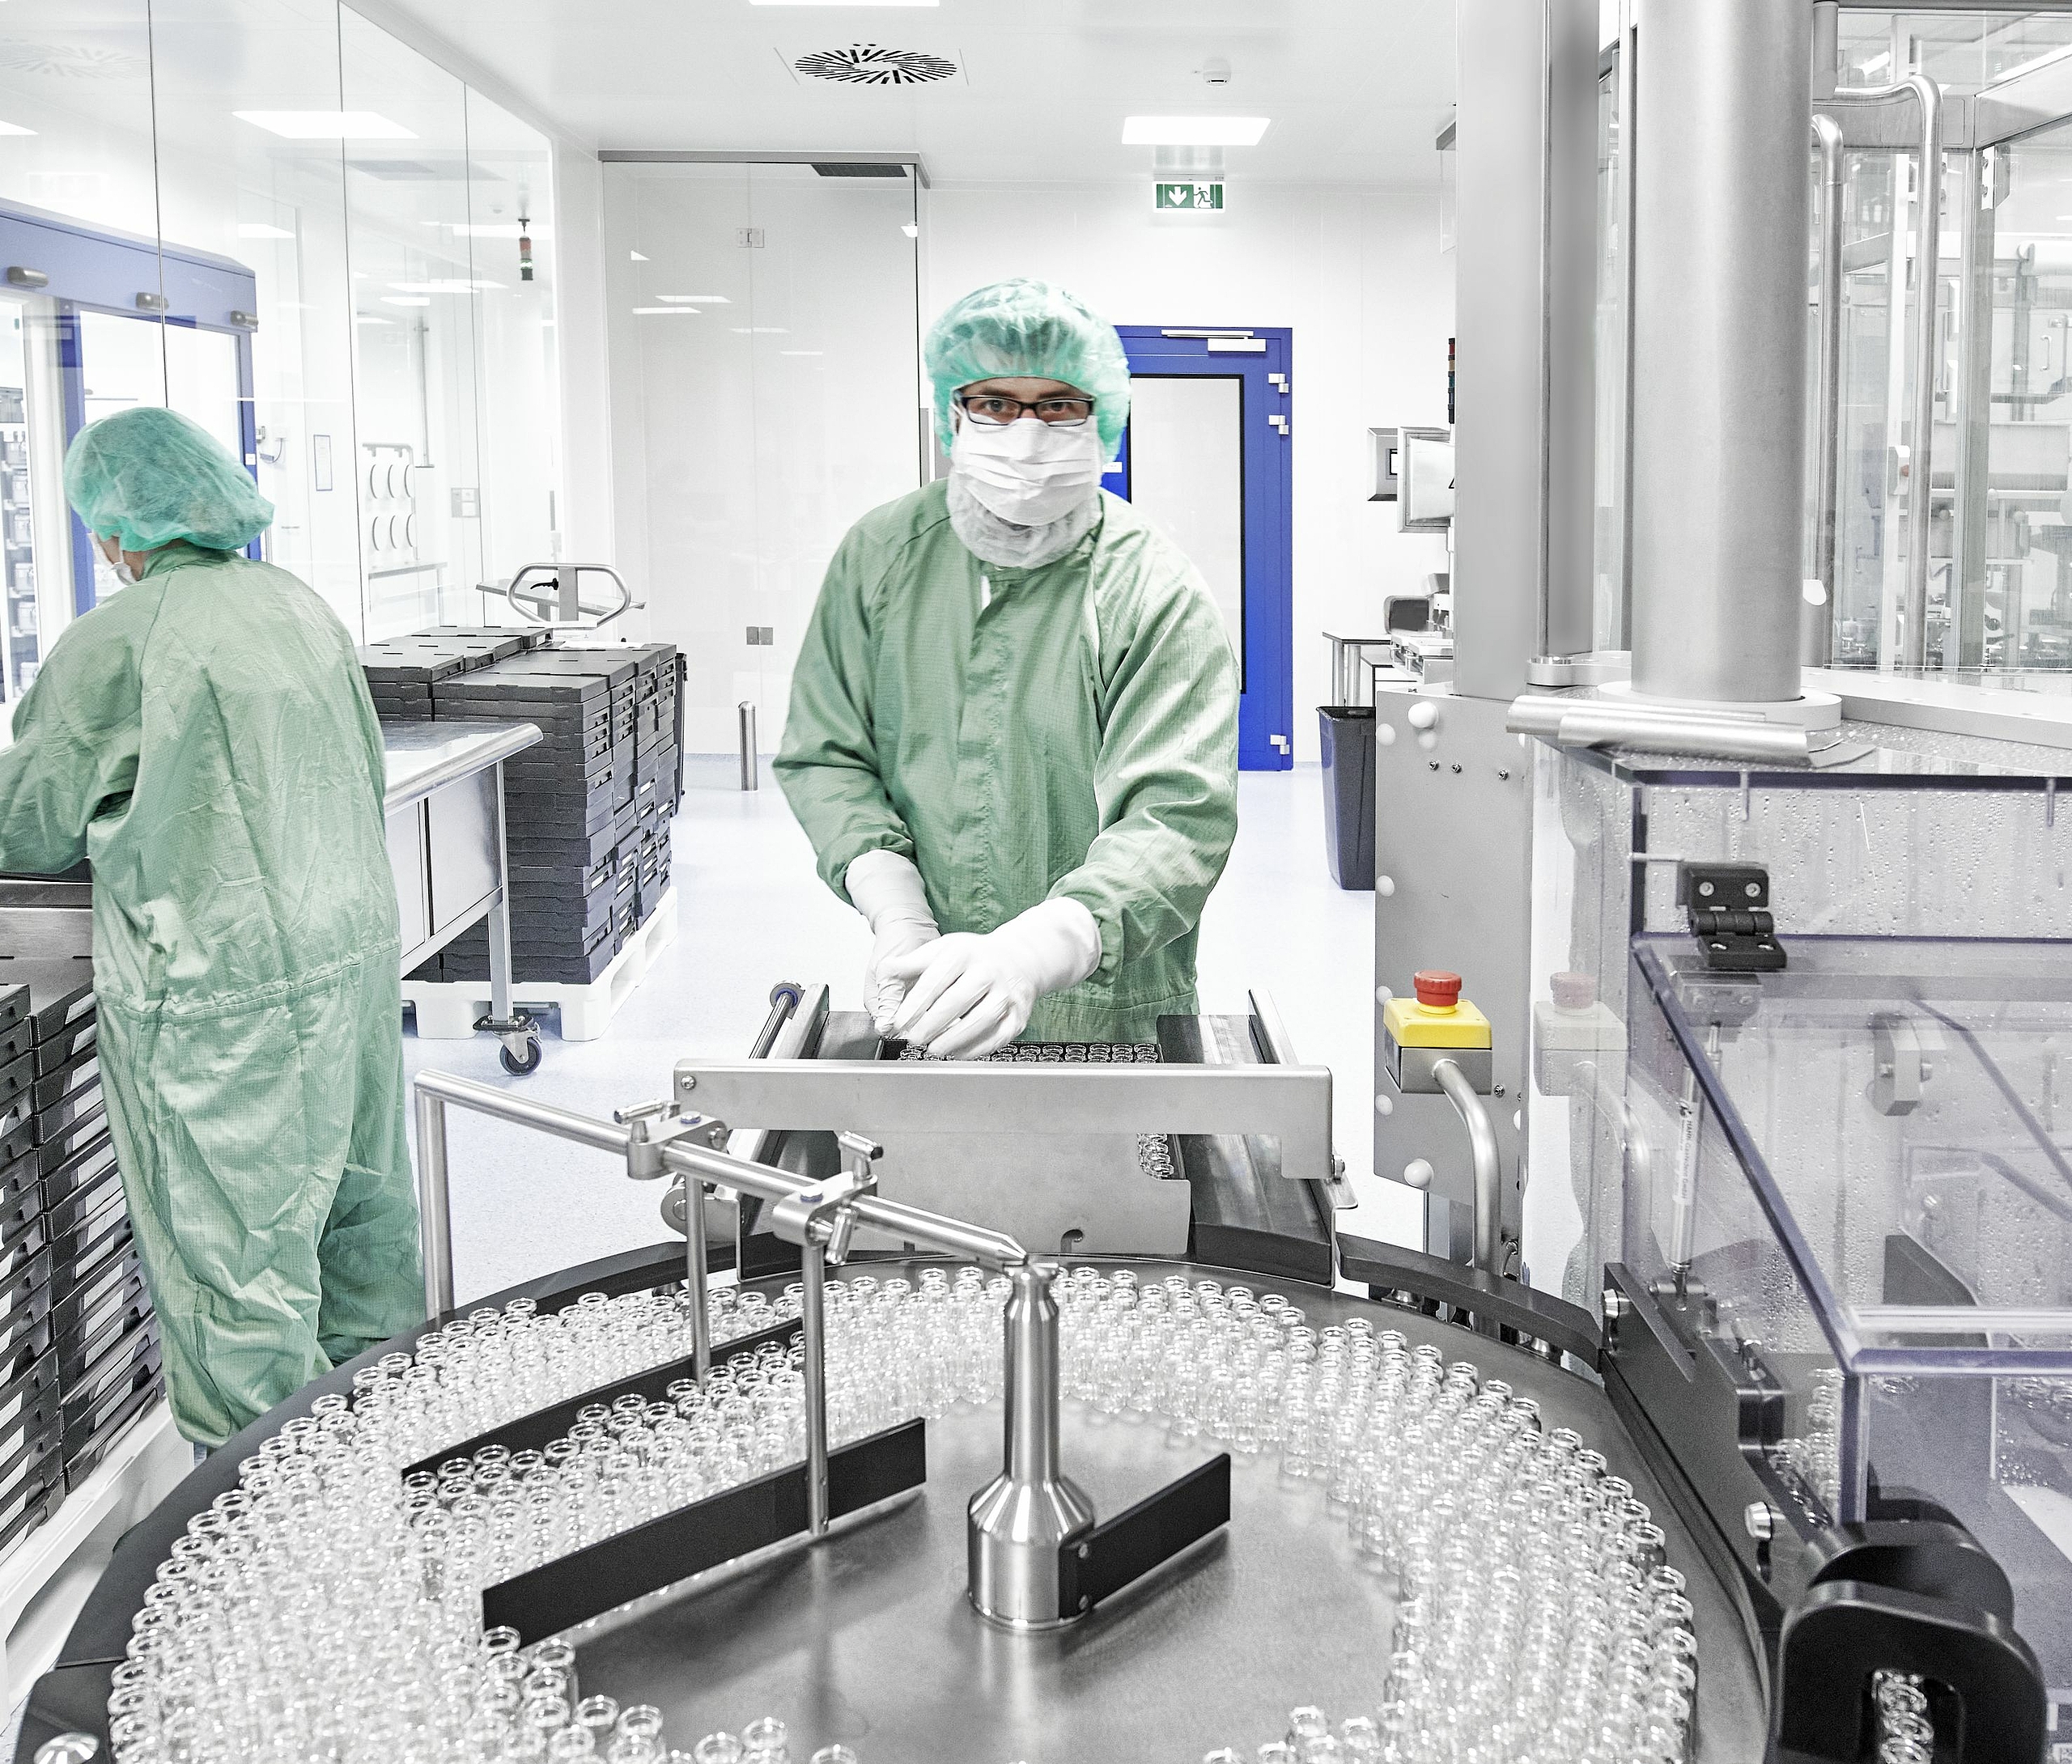 Hohe Qualitätsstandards in der aseptischen Produktion am klinischen Vetter-Standort im österreichischen Vorarlberg